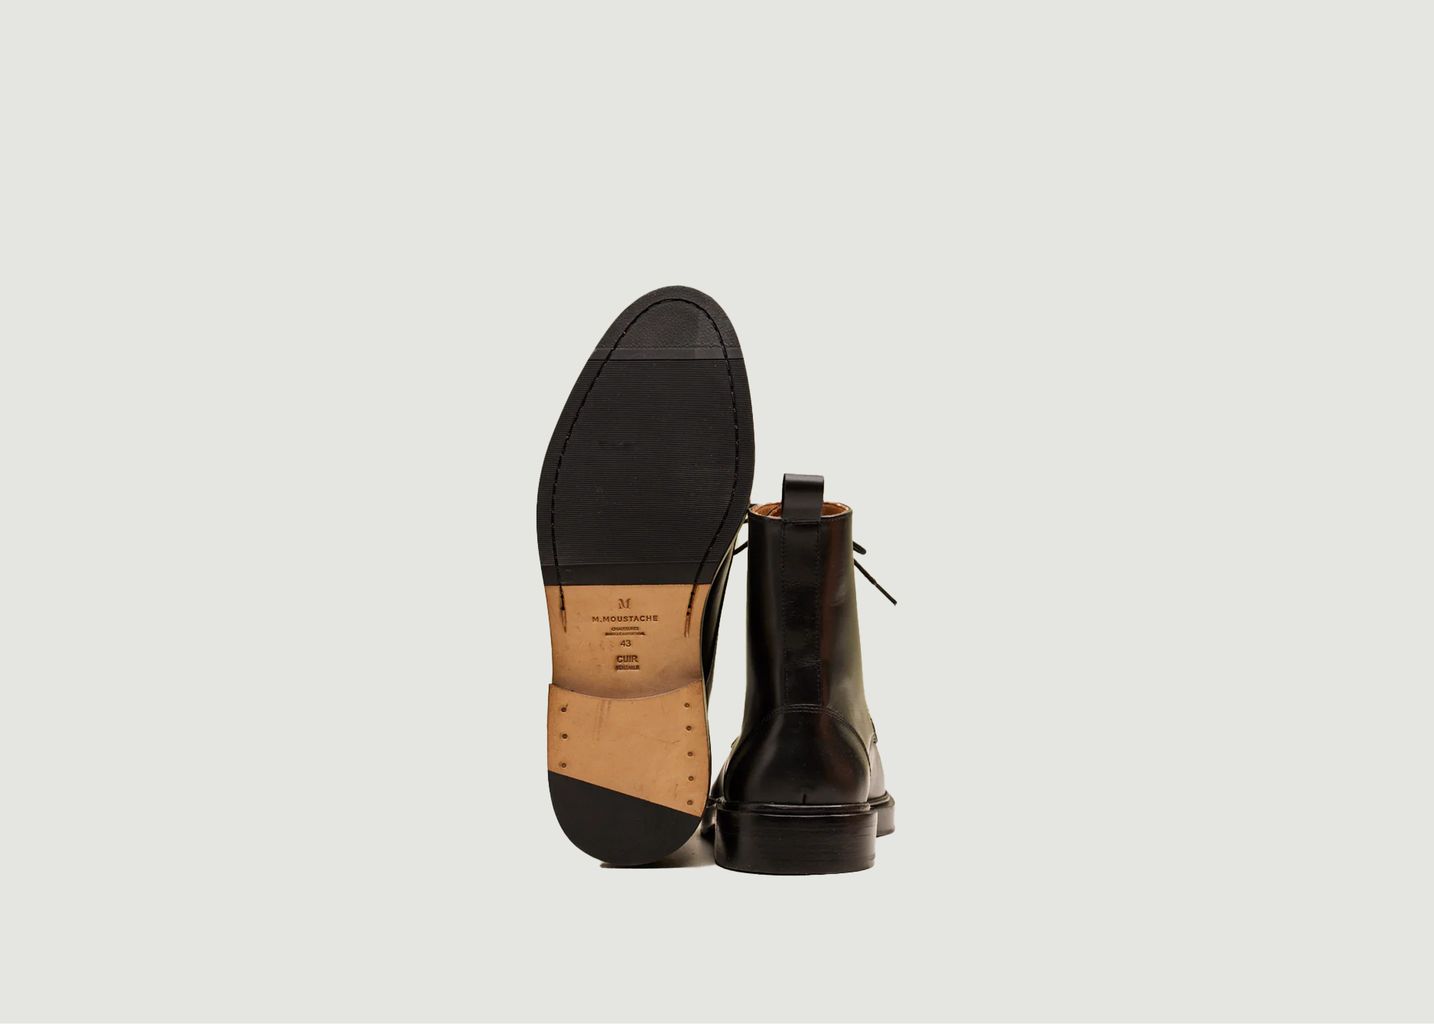 Timothée leather boots - M.Moustache